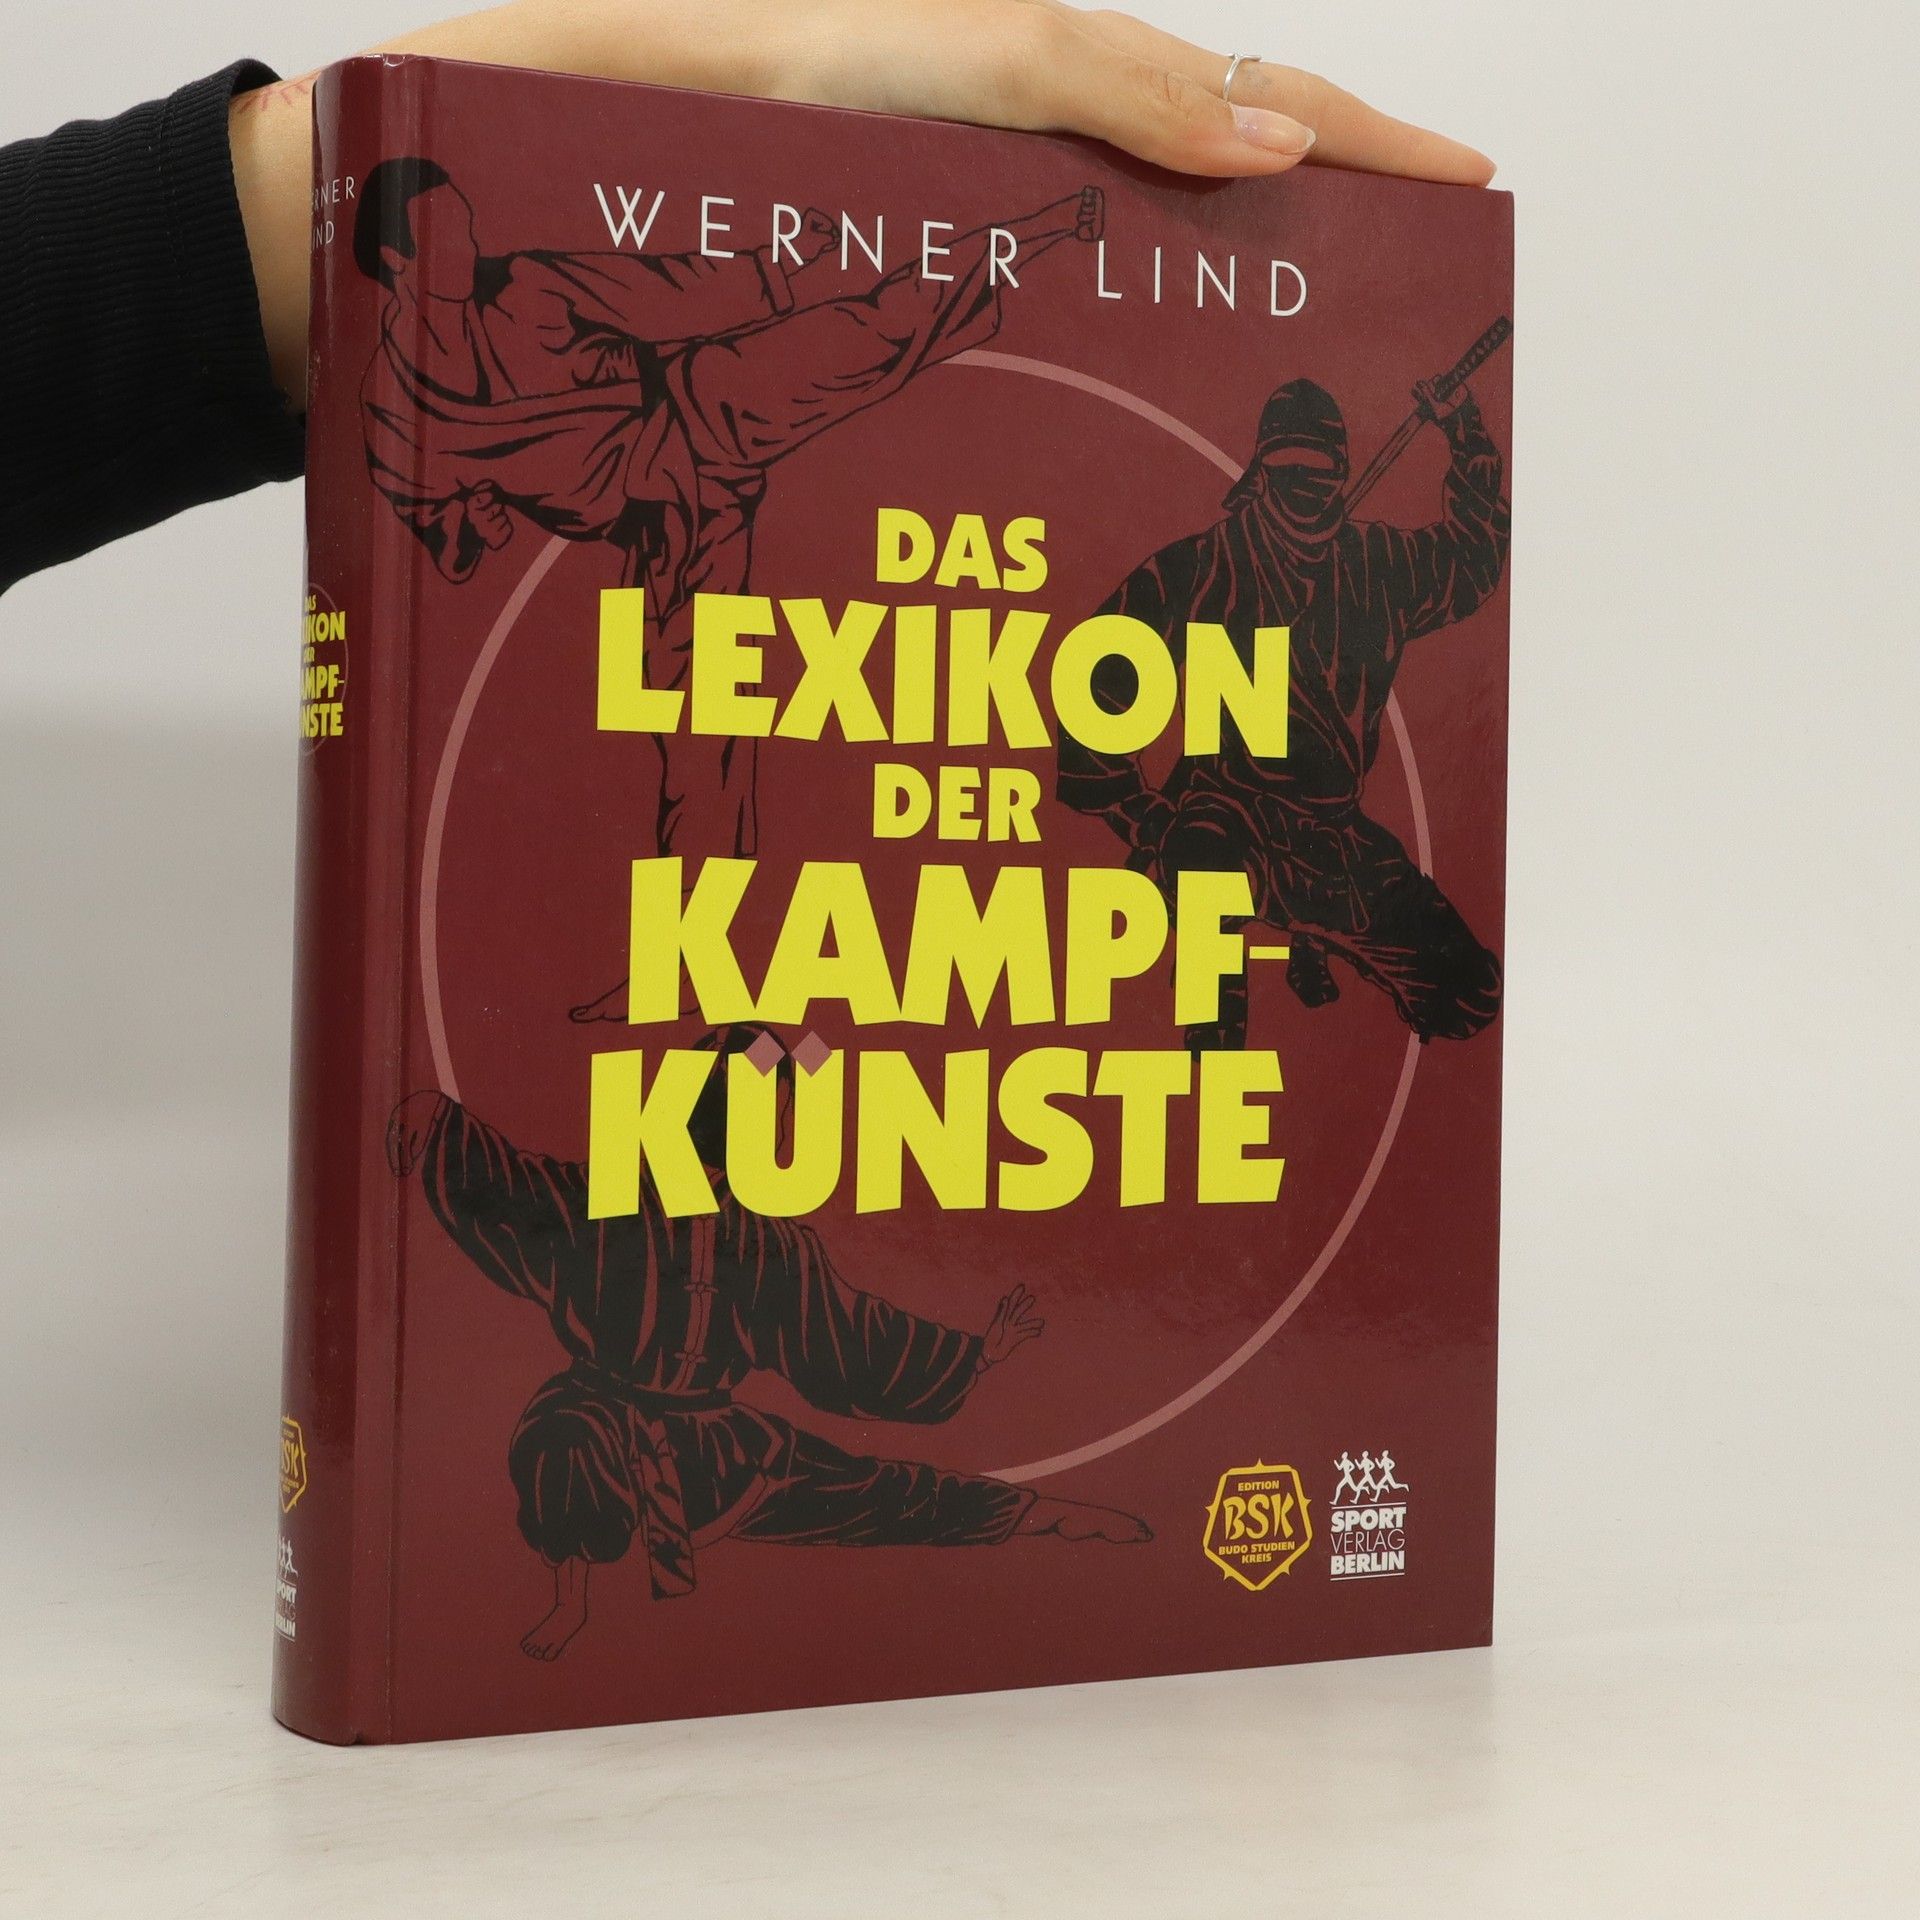 Lexikon der Kampfku?nste - Werner Lind